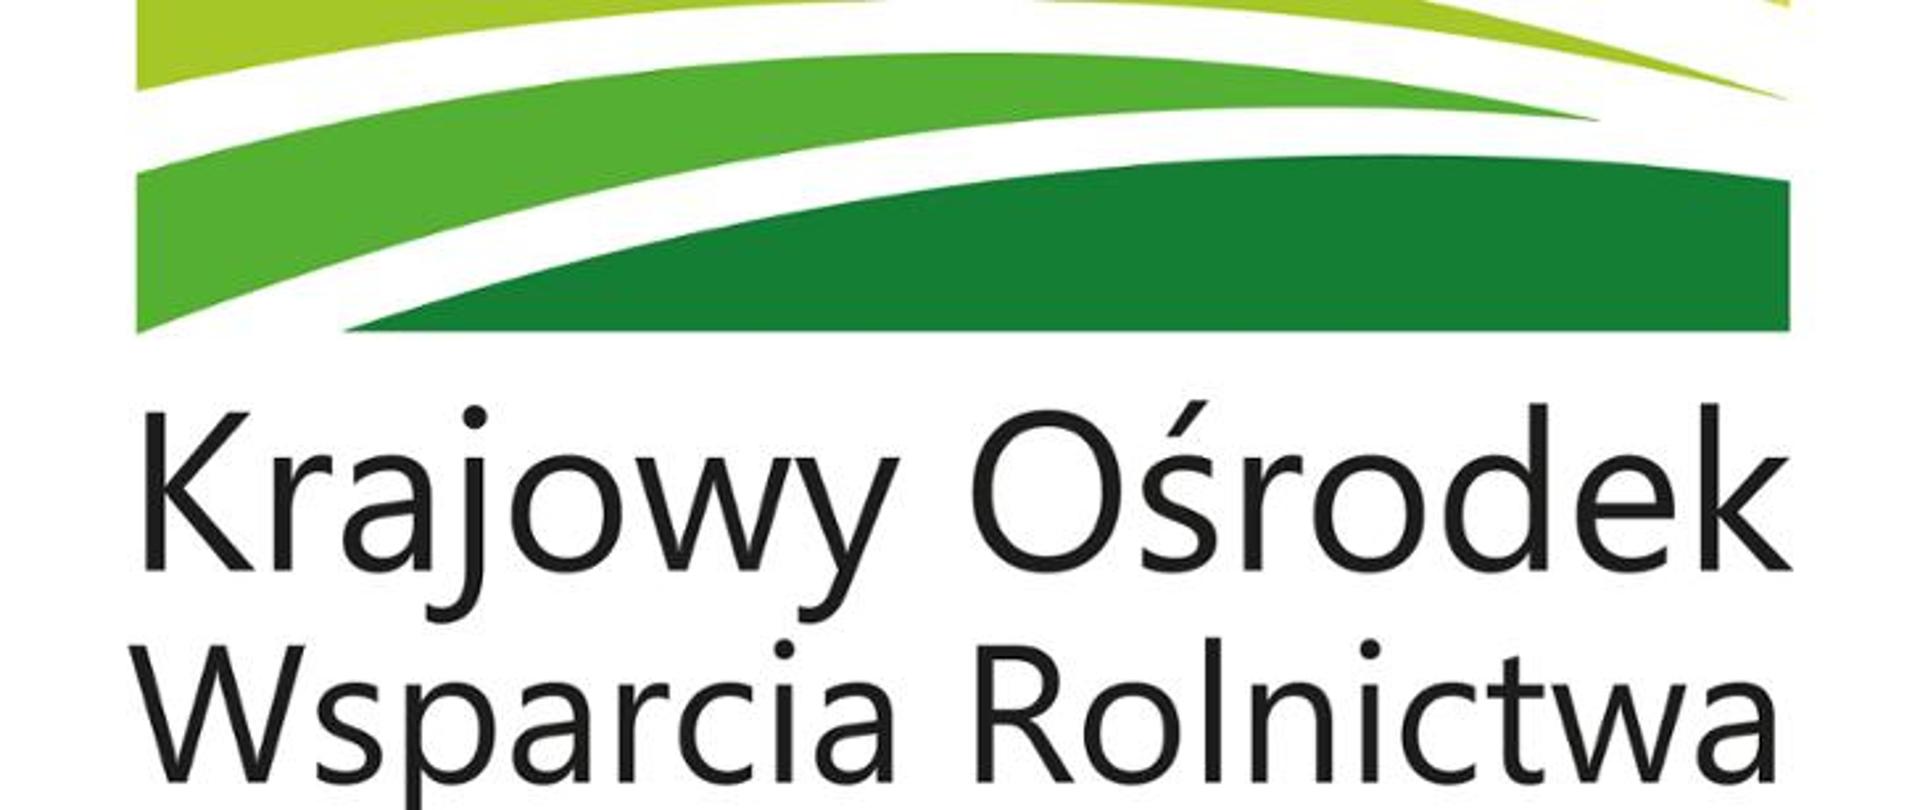 na obrazku znajduje się zielone logo KOWR, poniżej napis "Krajowy Ośrodek Wsparcia Rolnictwa"